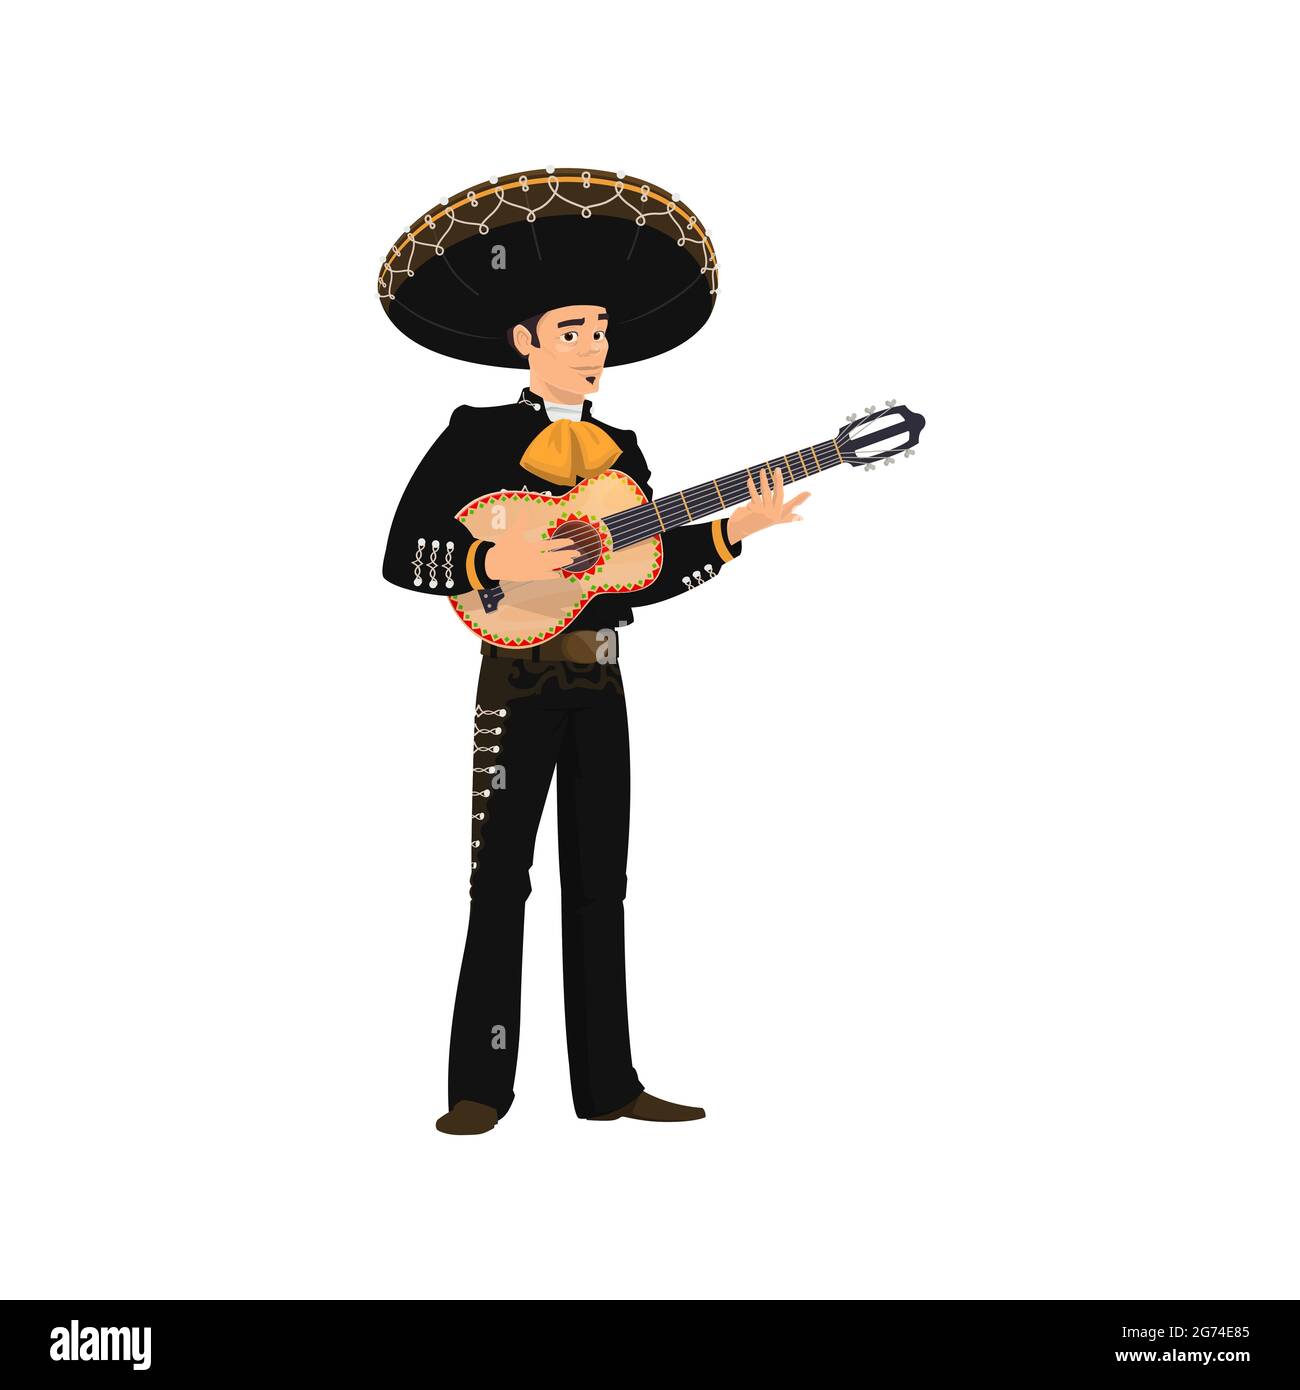 Karneval Musiker Mariachi spielt Gitarre isoliert. Vector spanischen Gitarristen Latino Street Player in nationalen schwarzen Kostüm und Sombrero Hut mit stri Stock Vektor